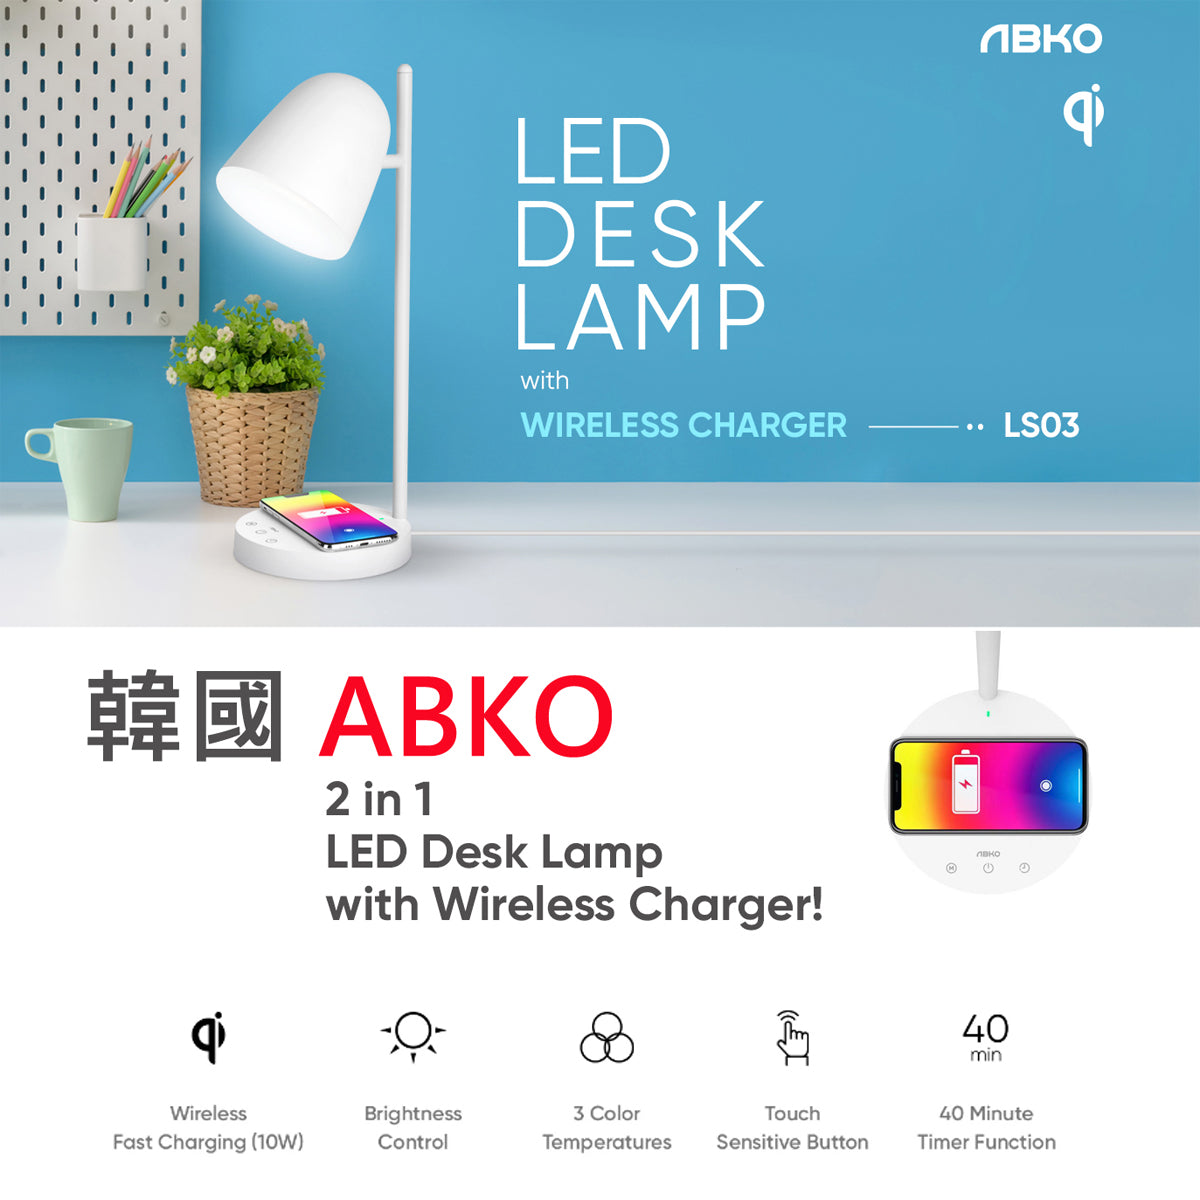 韓國 ABKO LS03 LED 檯燈 10W 無線充電 角度調整 / 時尚 / 節能 / 輕觸按鍵 / 3色調 / 護目燈